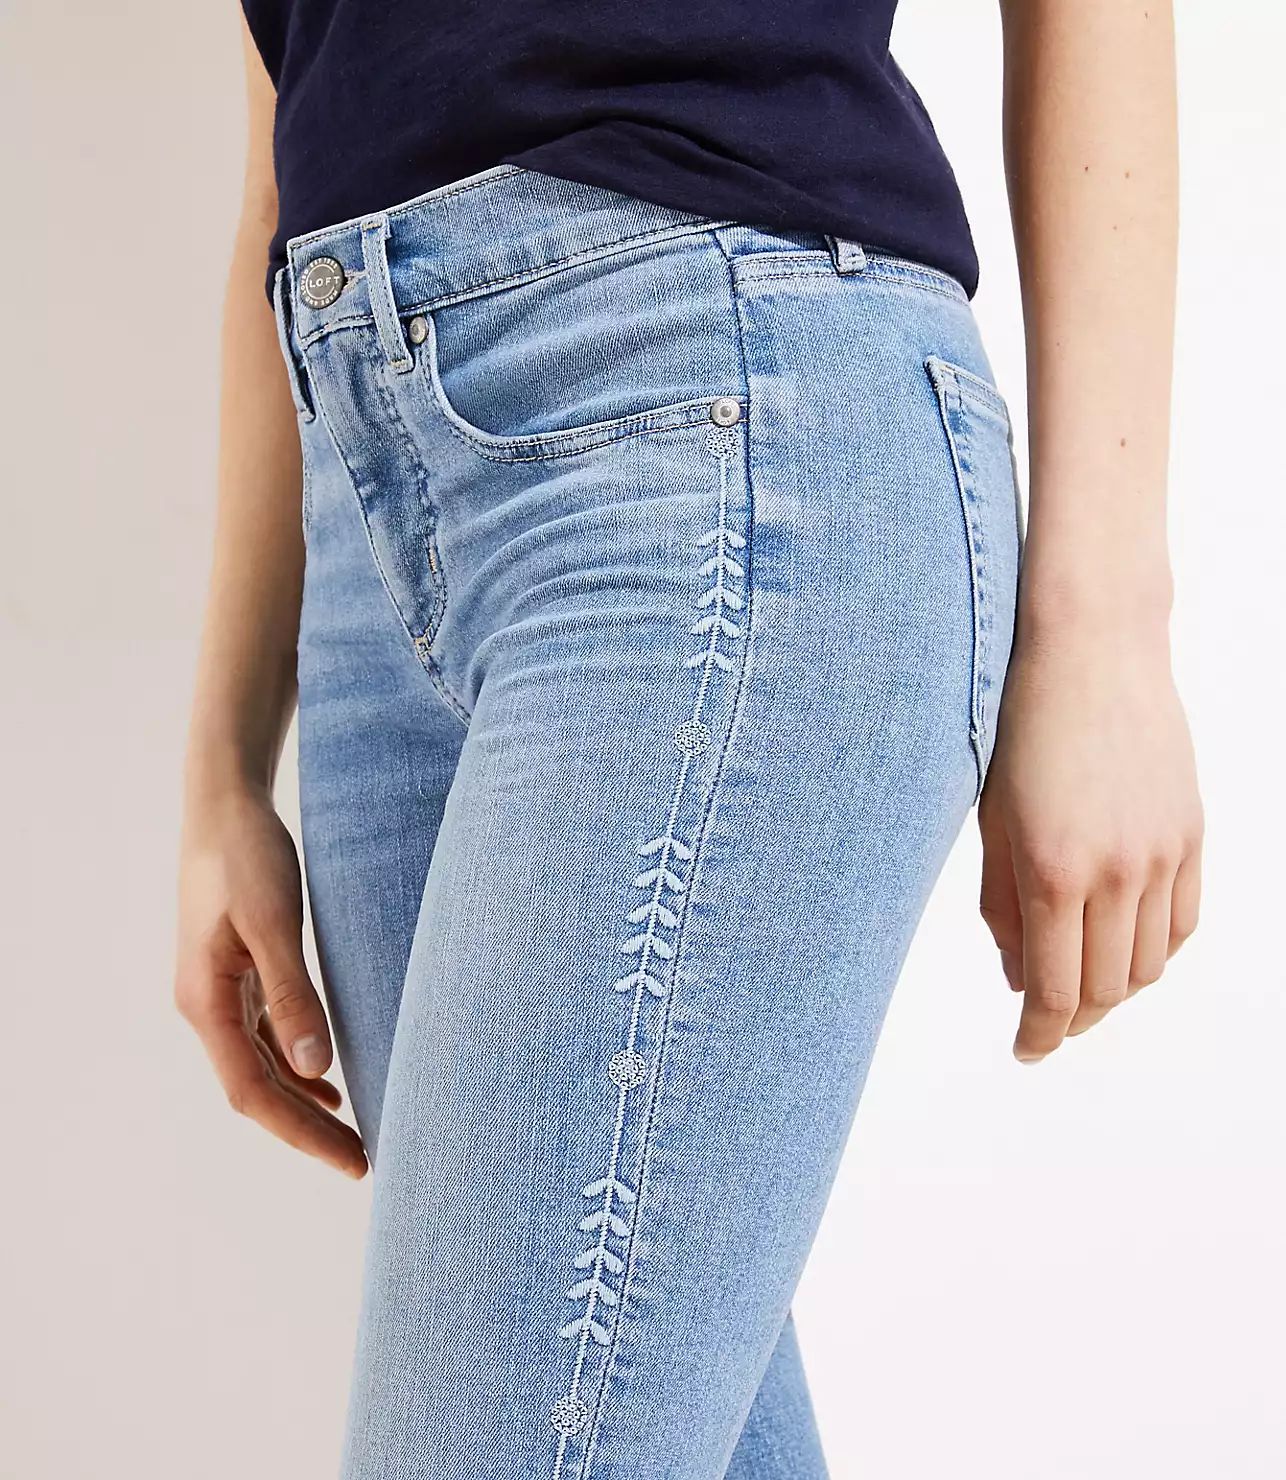 Embroidered Vine Soft Slim Pocket Skinny Crop Jeans in Vivid Light Indigo Wash | LOFT